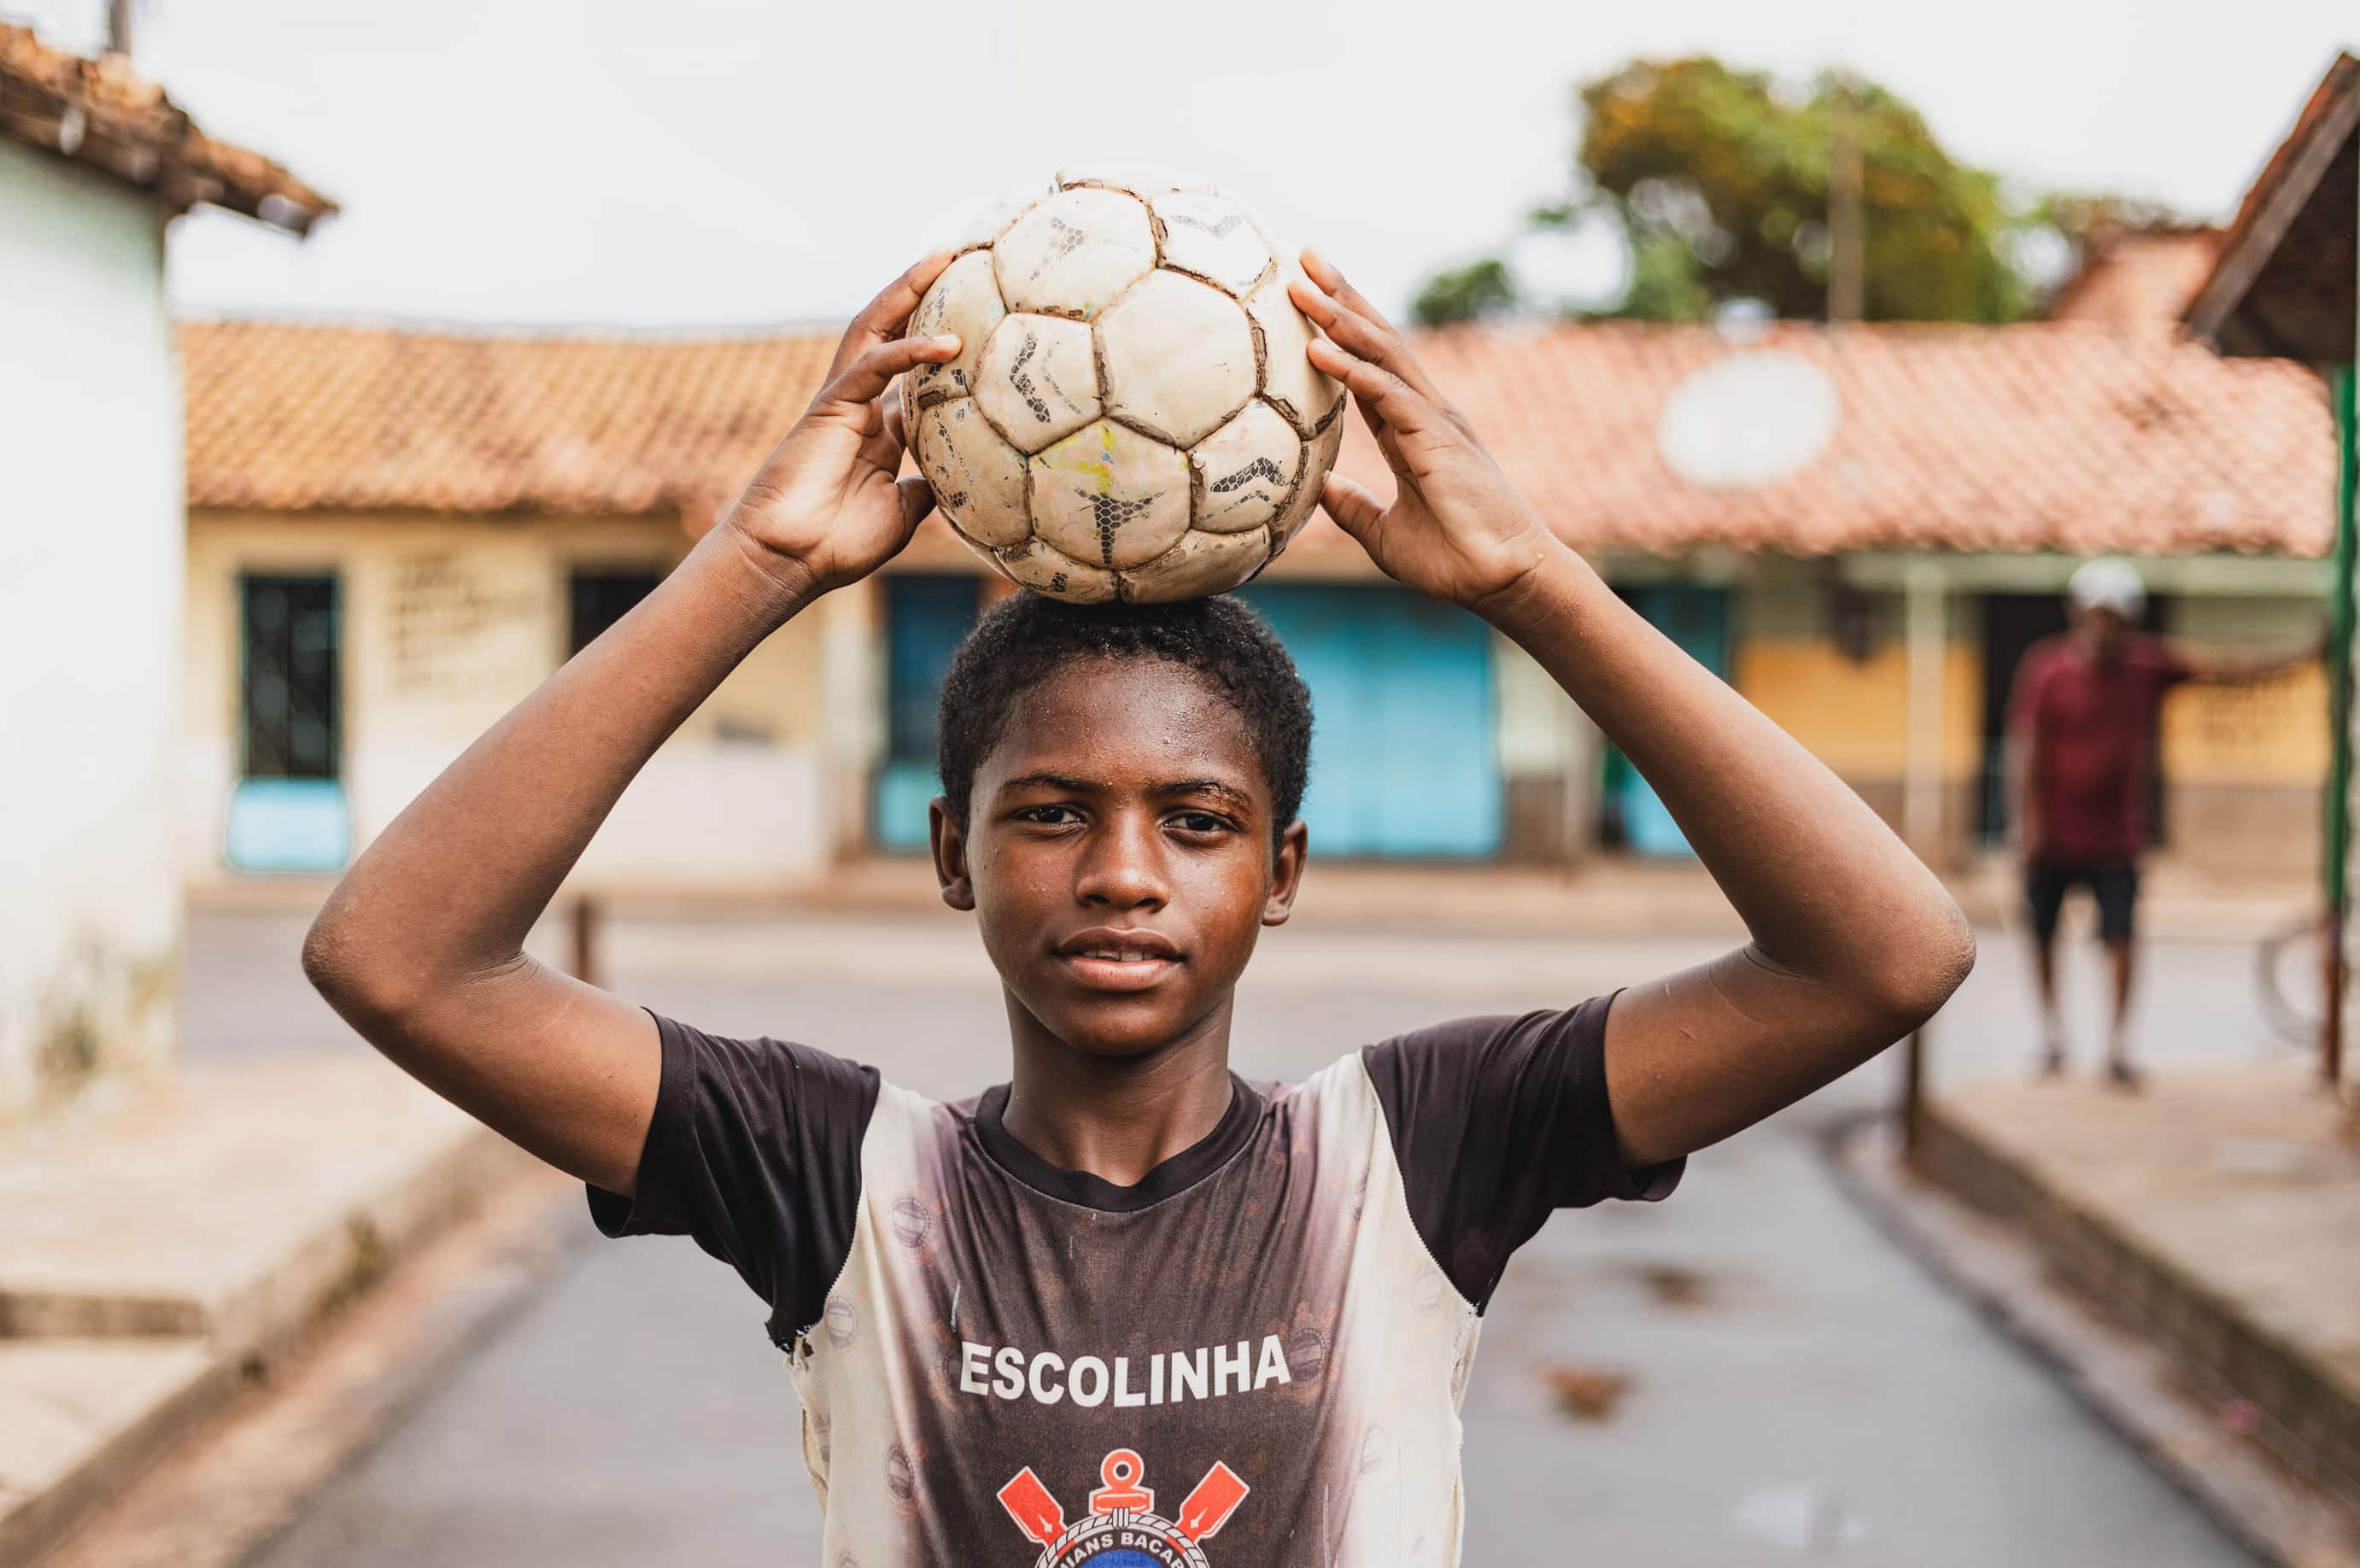 alt="Luis mit einem Fußball auf dem Kopf, Luis`s Geschichte, Compassion Deutschland, Luís‘ Träume inmitten extremer Armut, Brasilien"